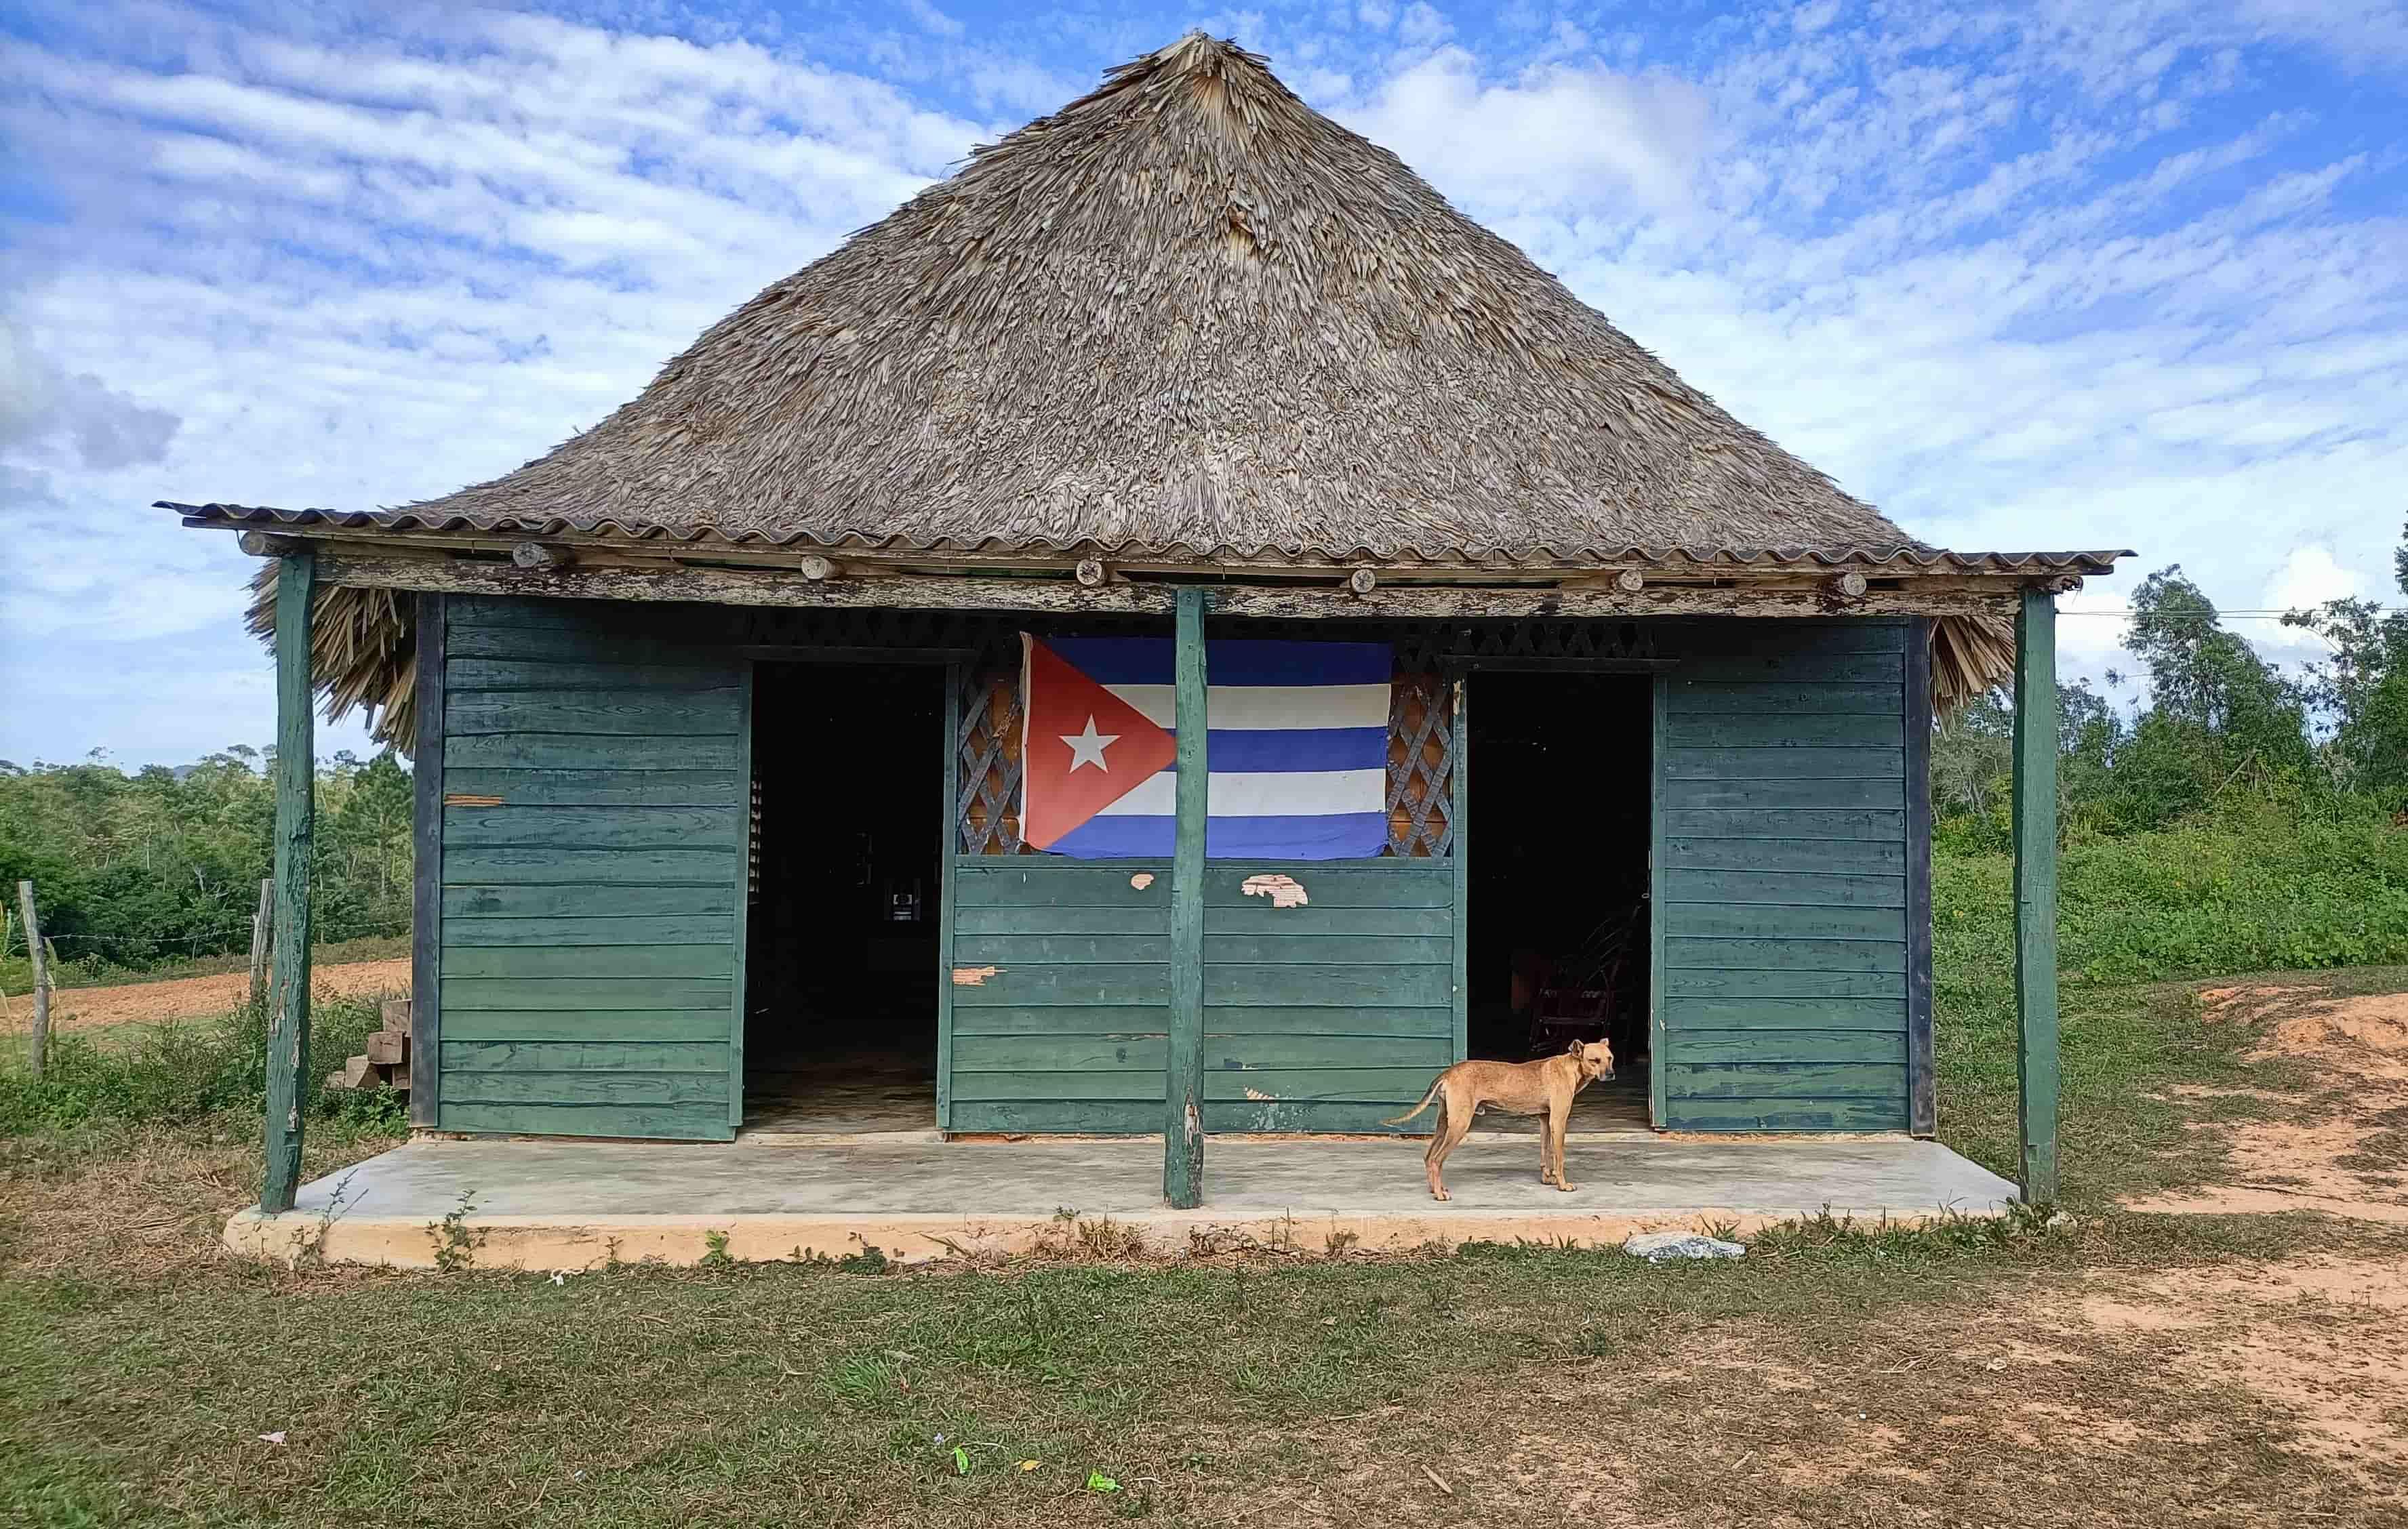 Maison de village dans la région de Mil Cumbres à Cuba © Olivier Caillaud